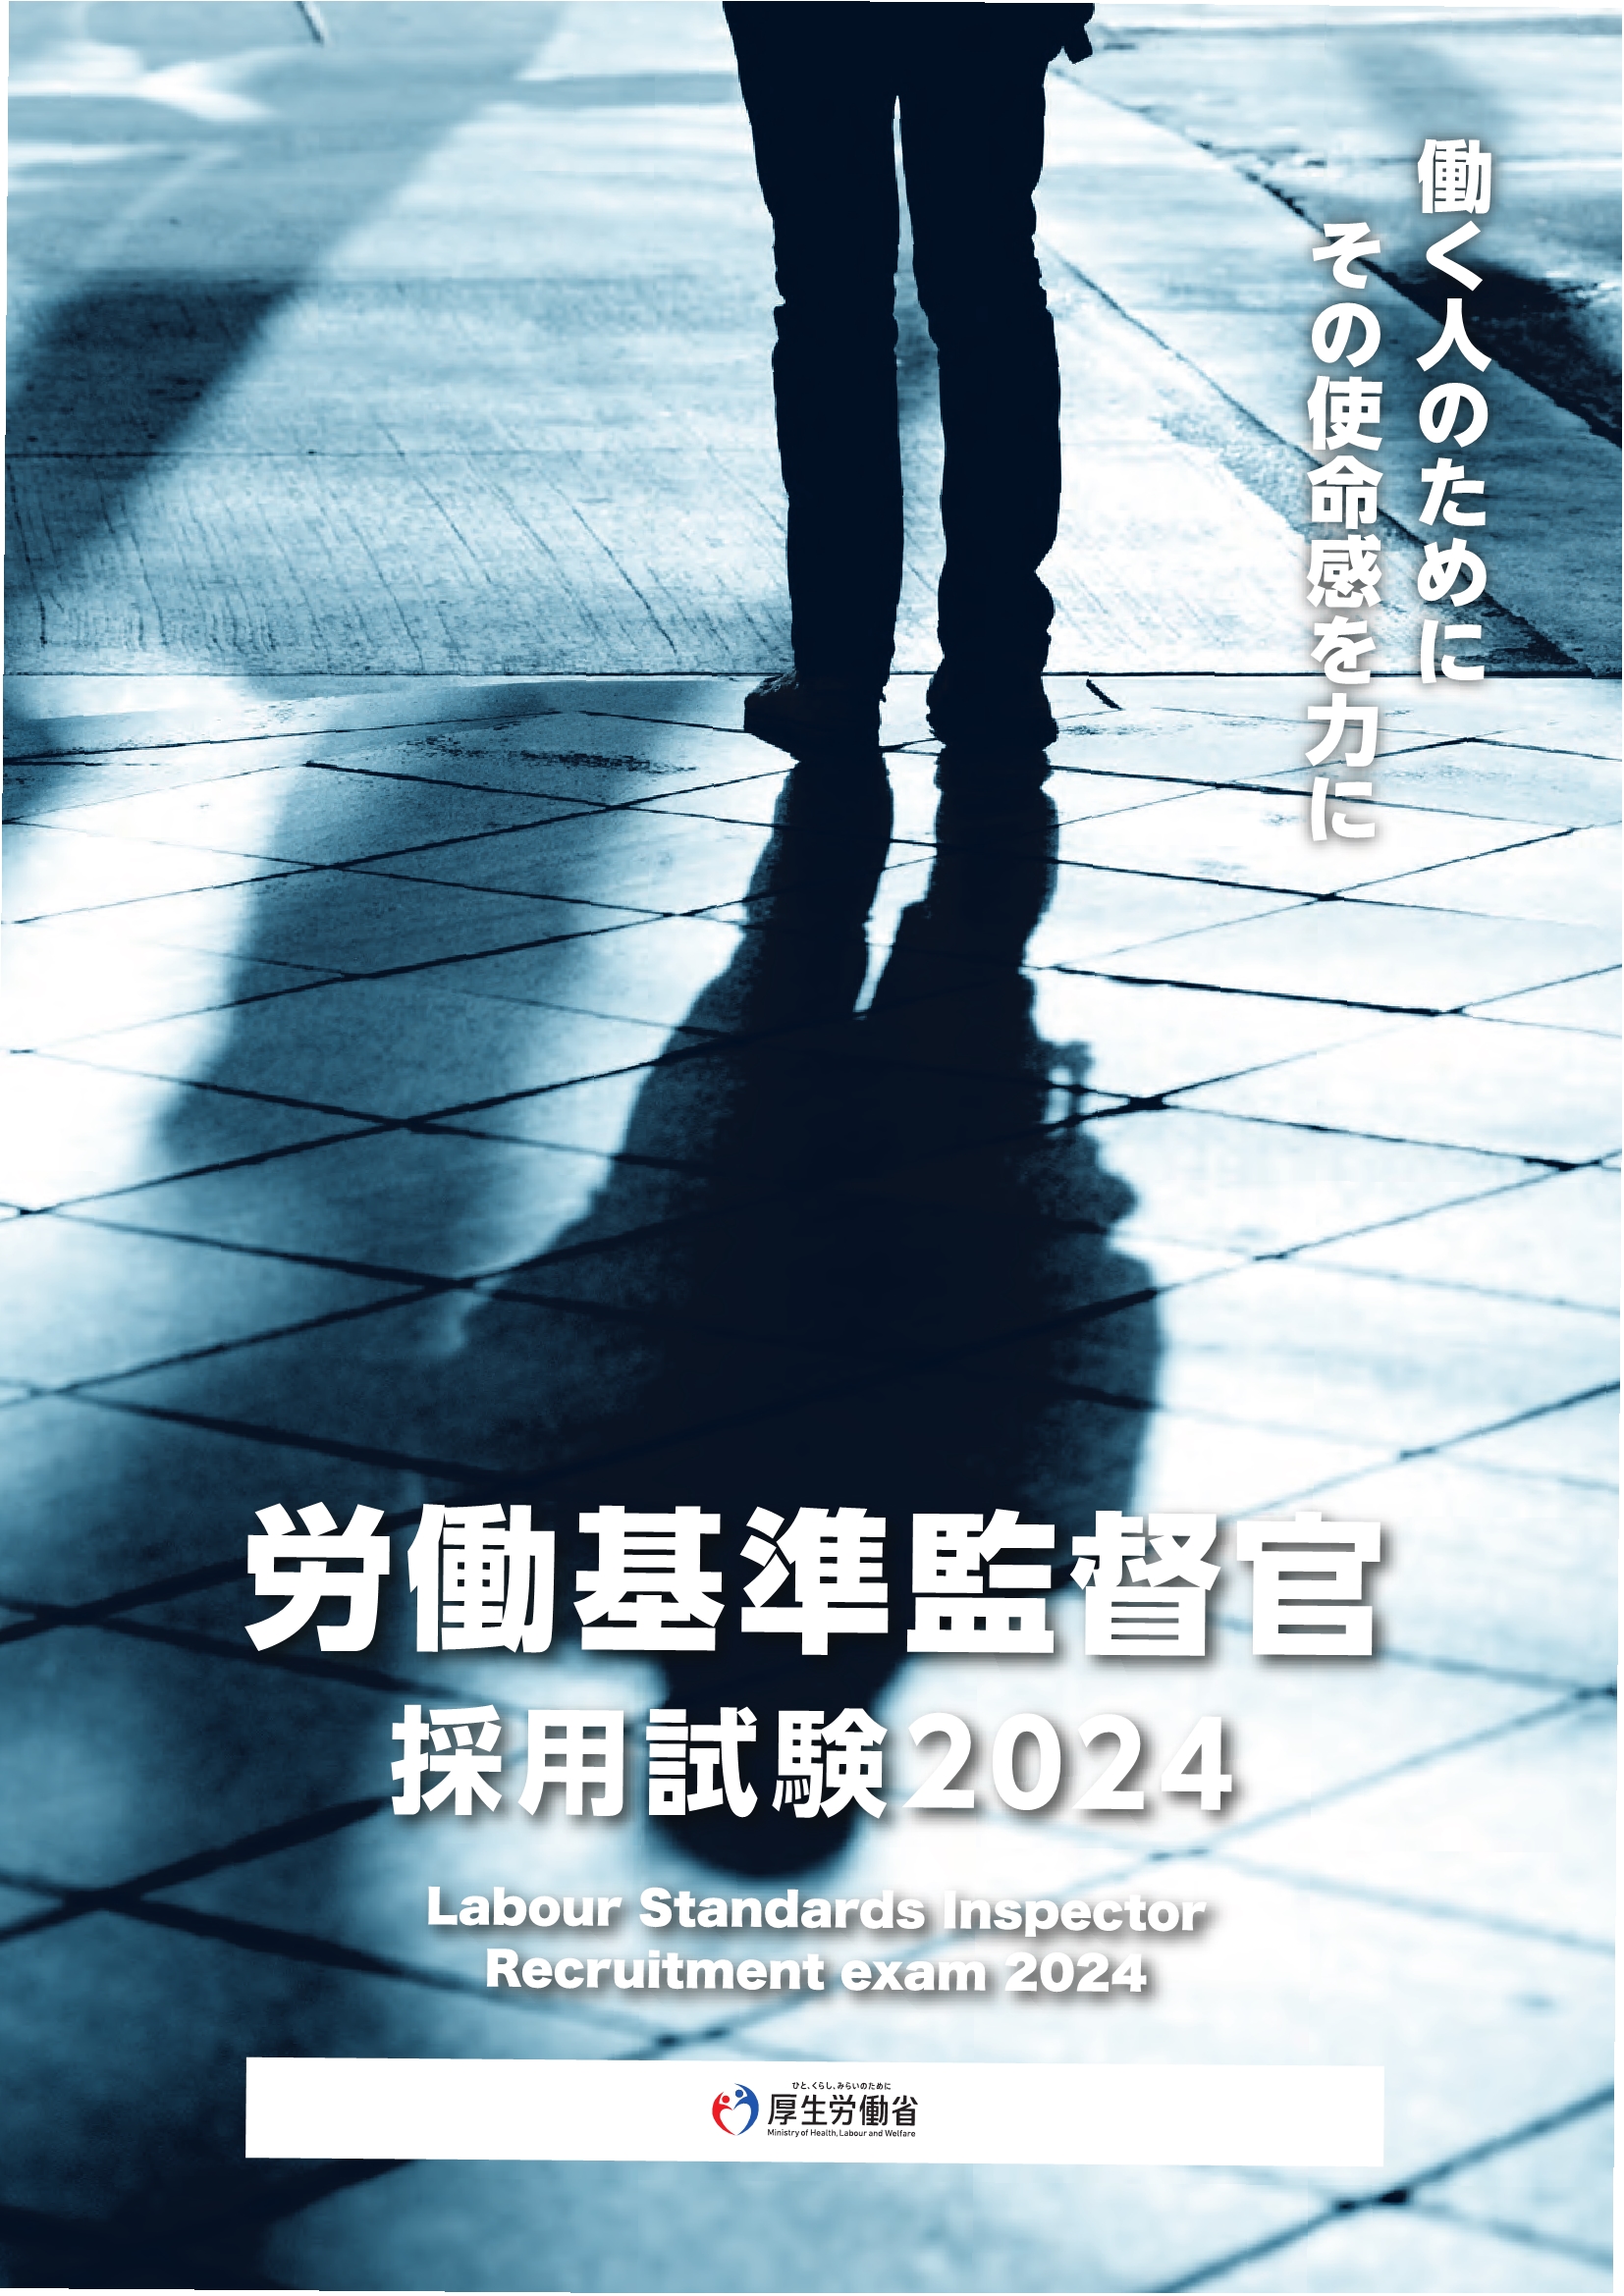 労働基準監督官採用試験2024